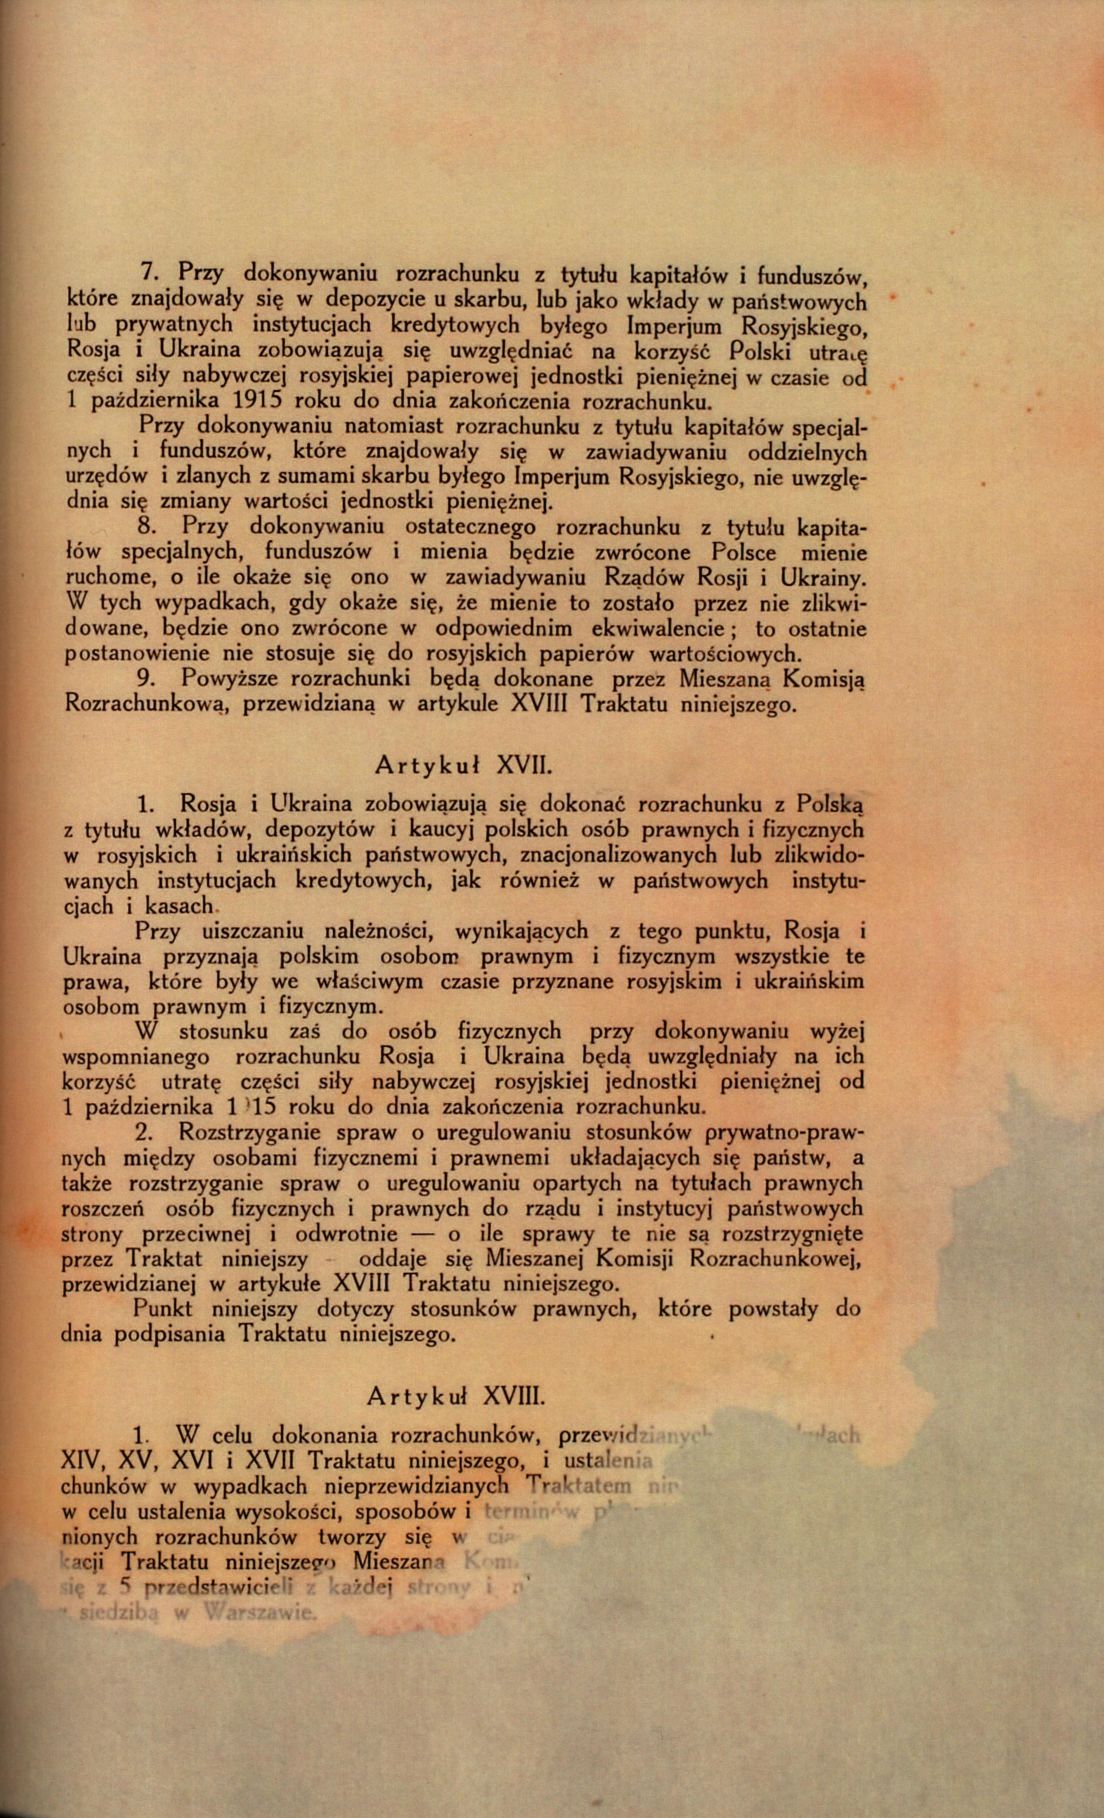 Traktat Pokoju między Polską a Rosją i Ukrainą podpisany w Rydze dnia 18 marca 1921 roku, s. 19, MSZ, sygn. 6739.